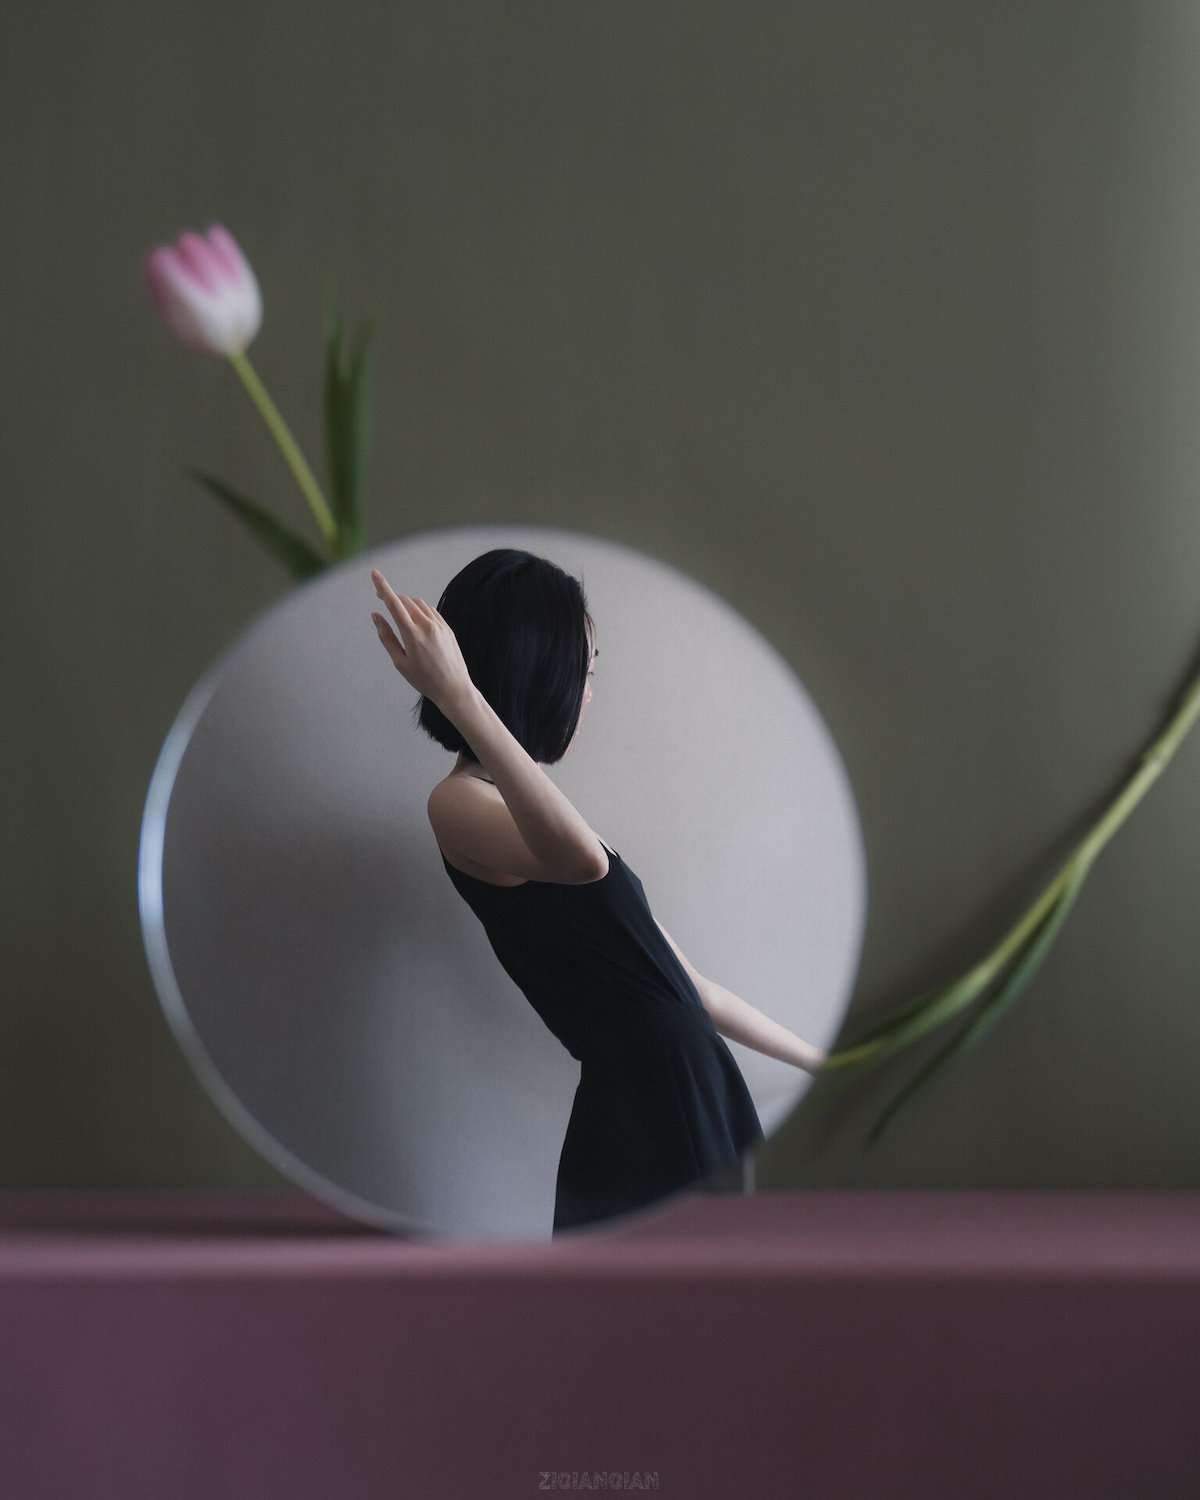 Surreal Mirror Reflection Photo by Ziqian Liu